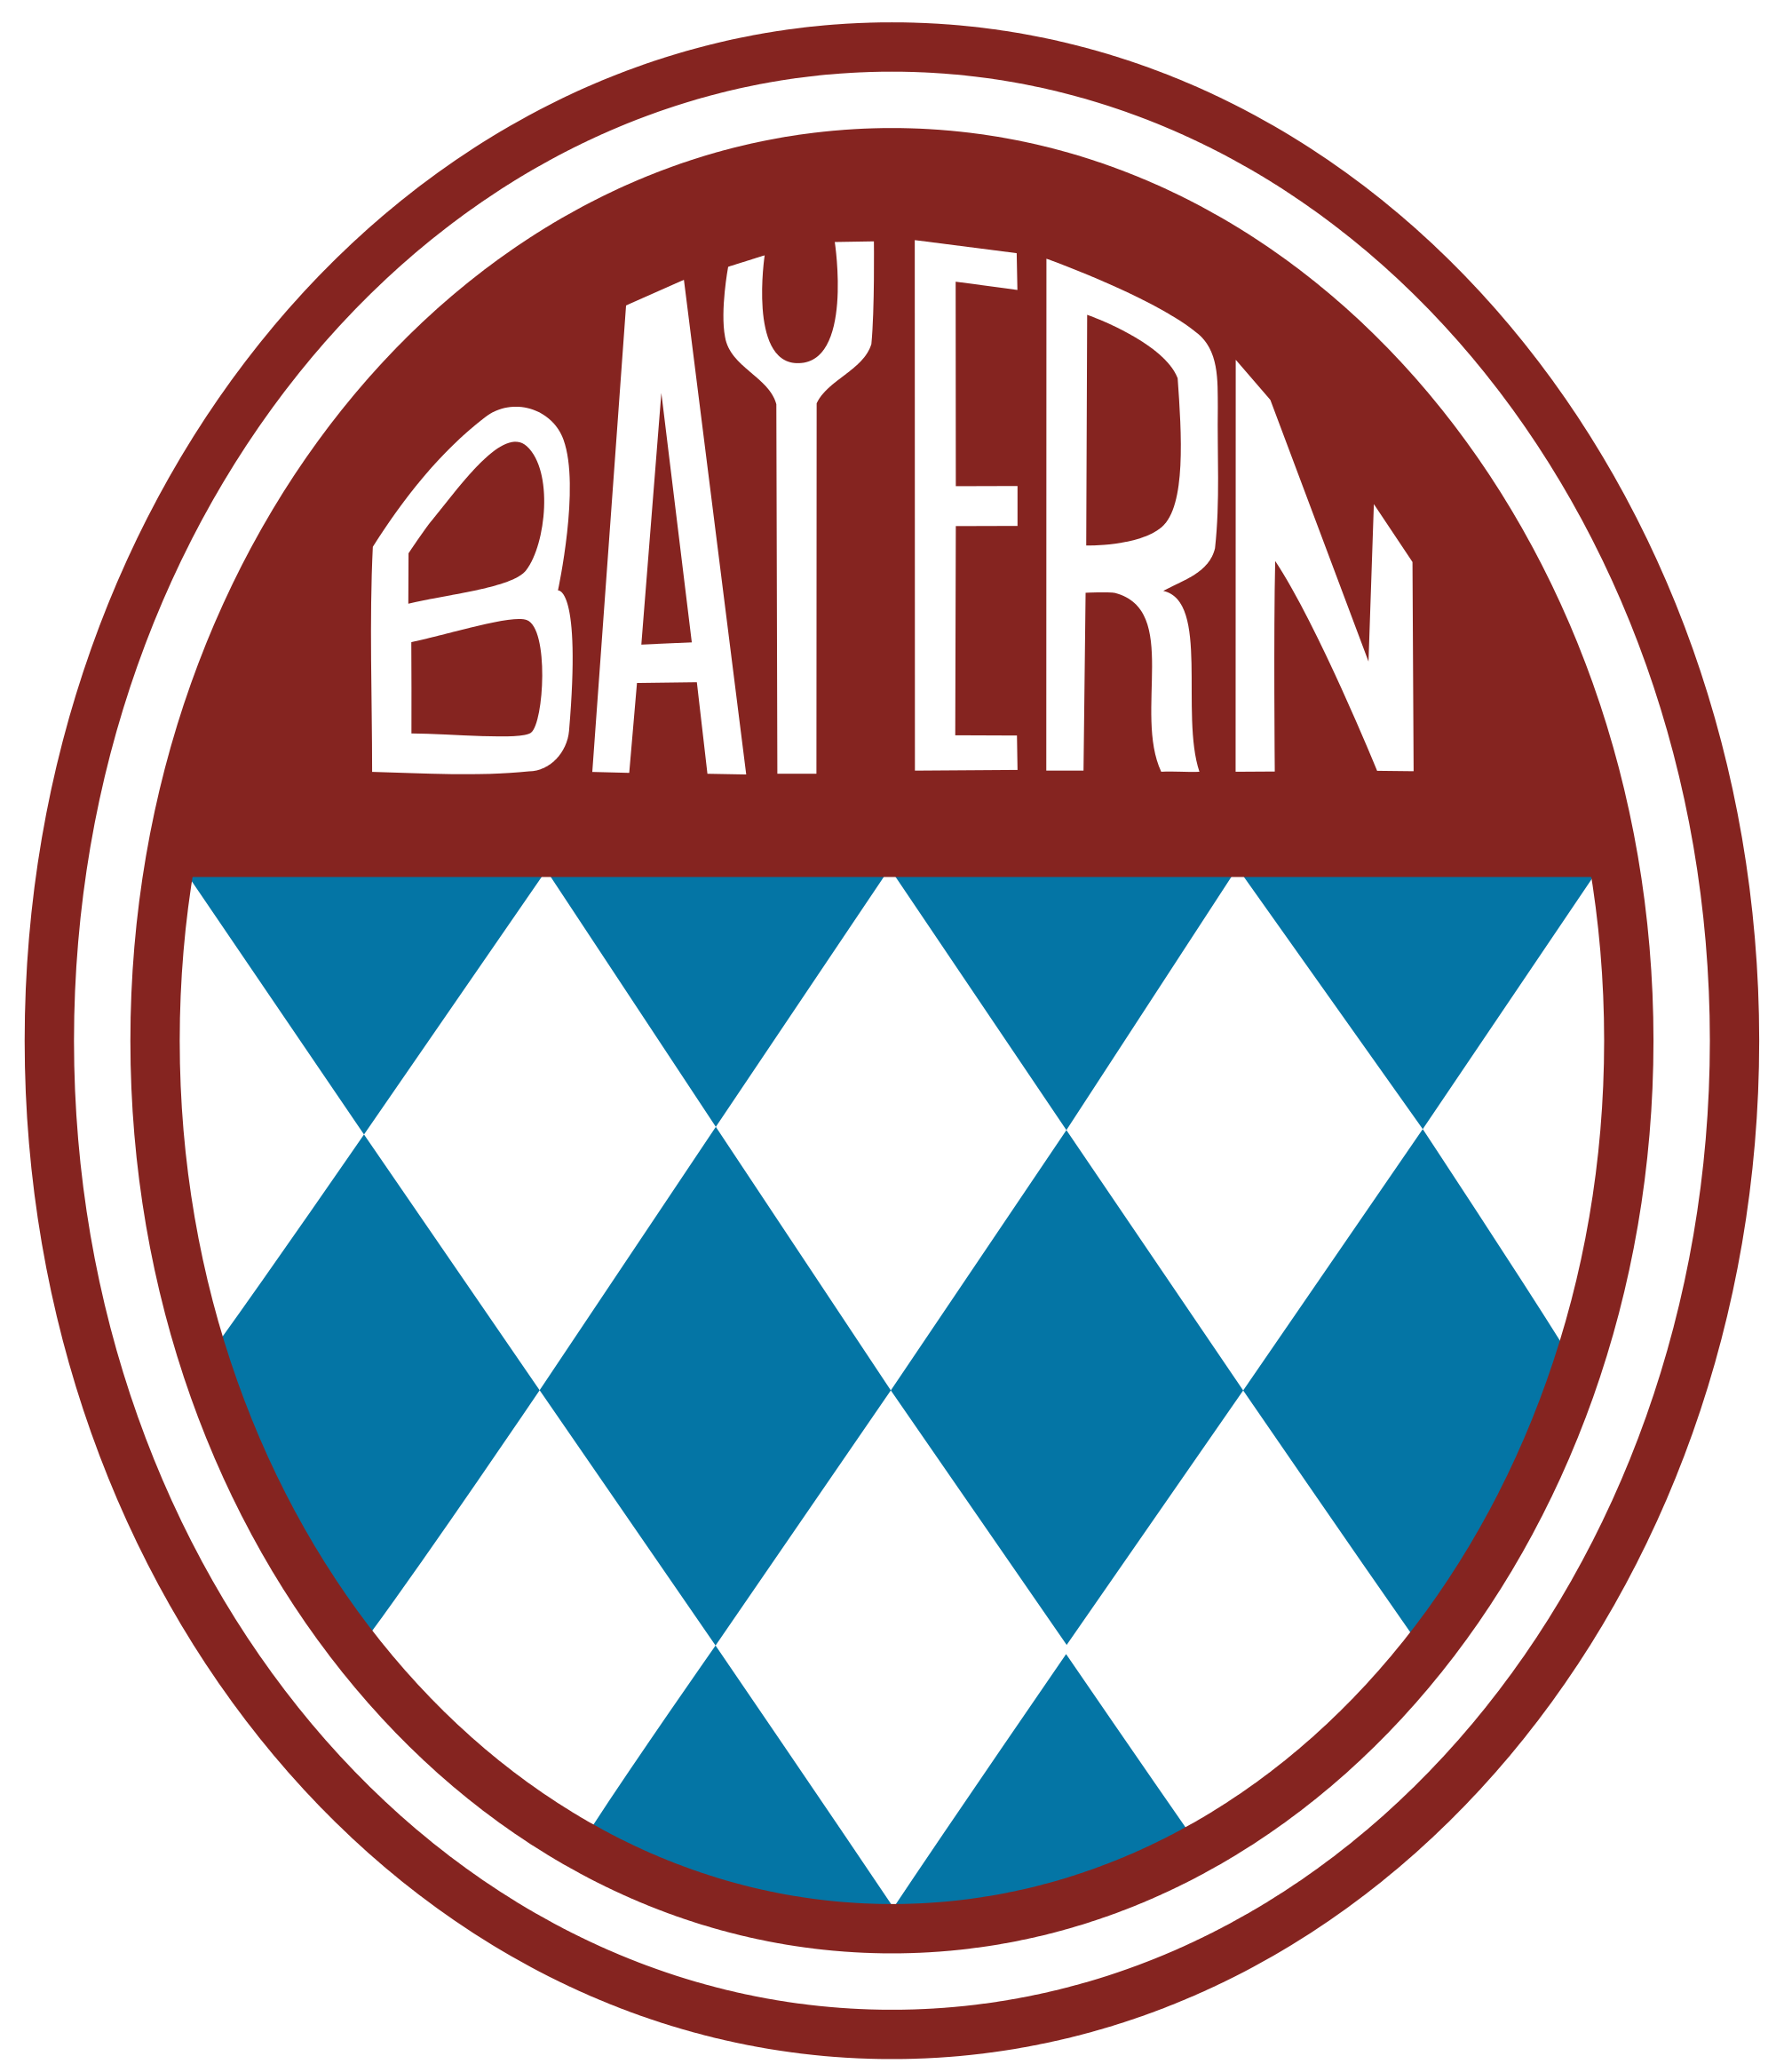 Fc Bayern Munich Logo / FC Bayern München | Logopedia ...